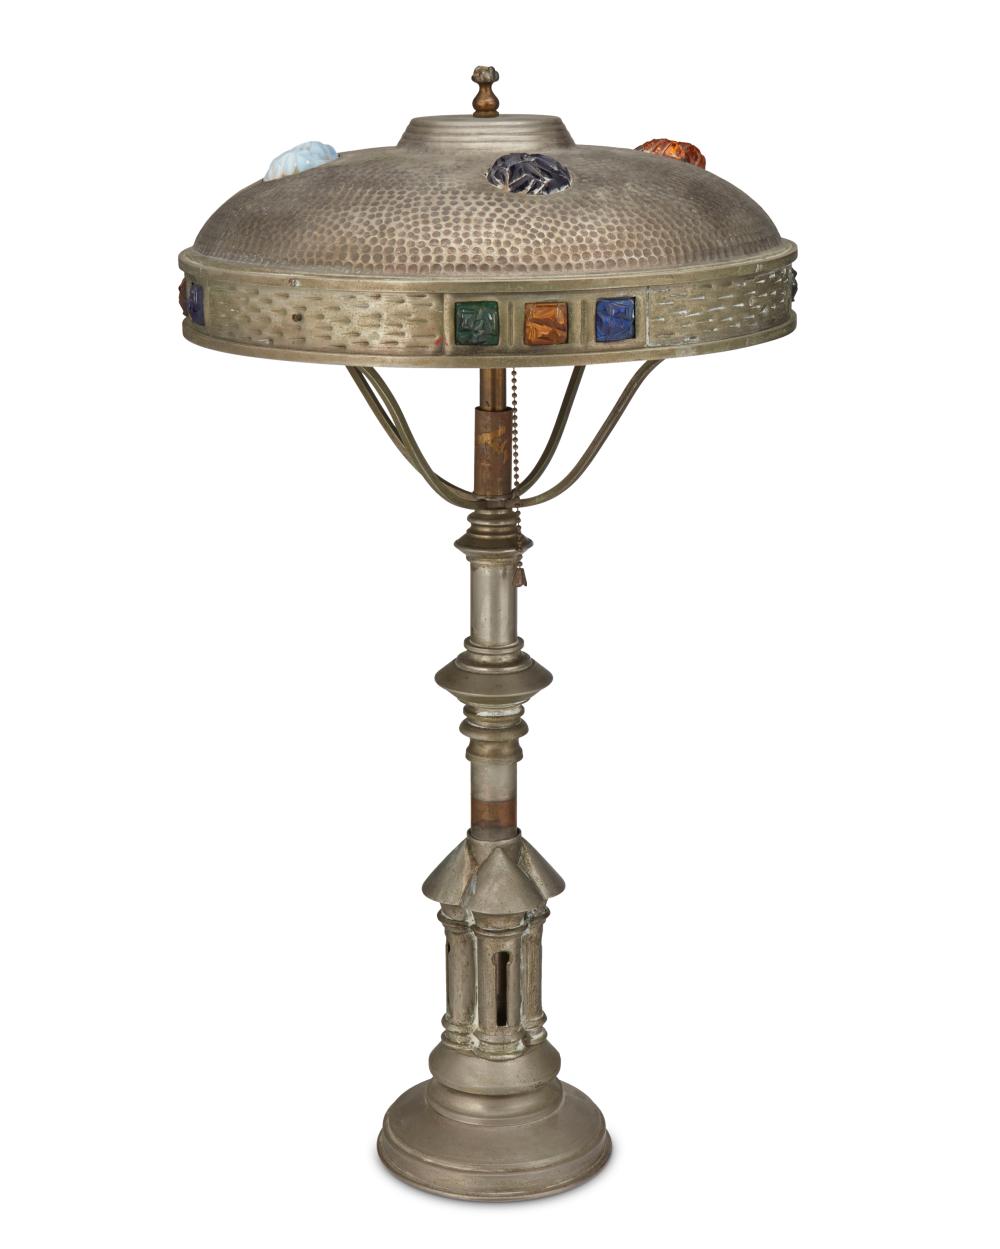 AN AUSTRIAN JUGENDSTIL TABLE LAMPAn 2eebf1